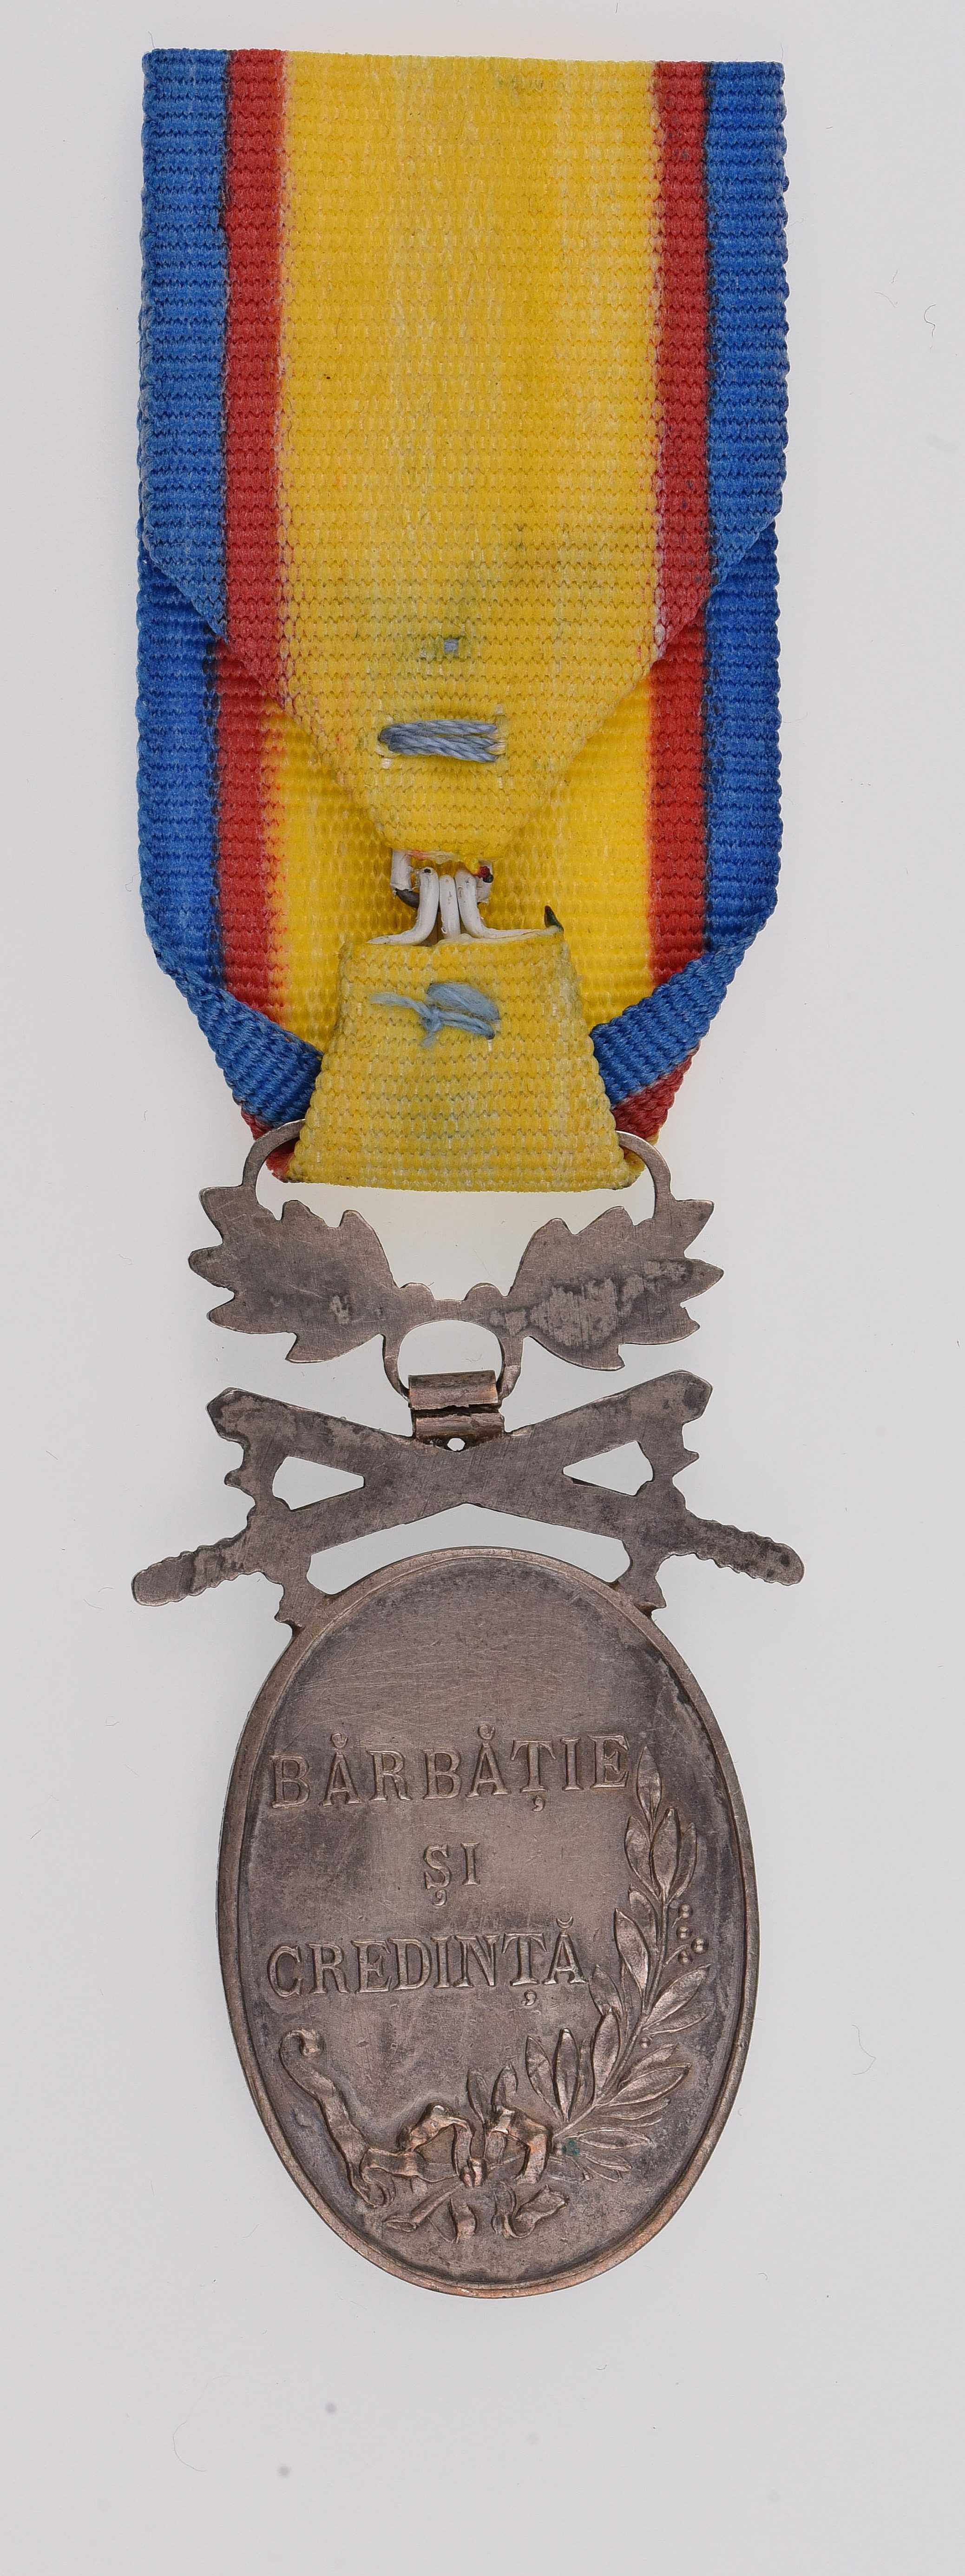 Medalia Barbatie si Credinta clasa a 2a cu spade, panglica inlocuitor